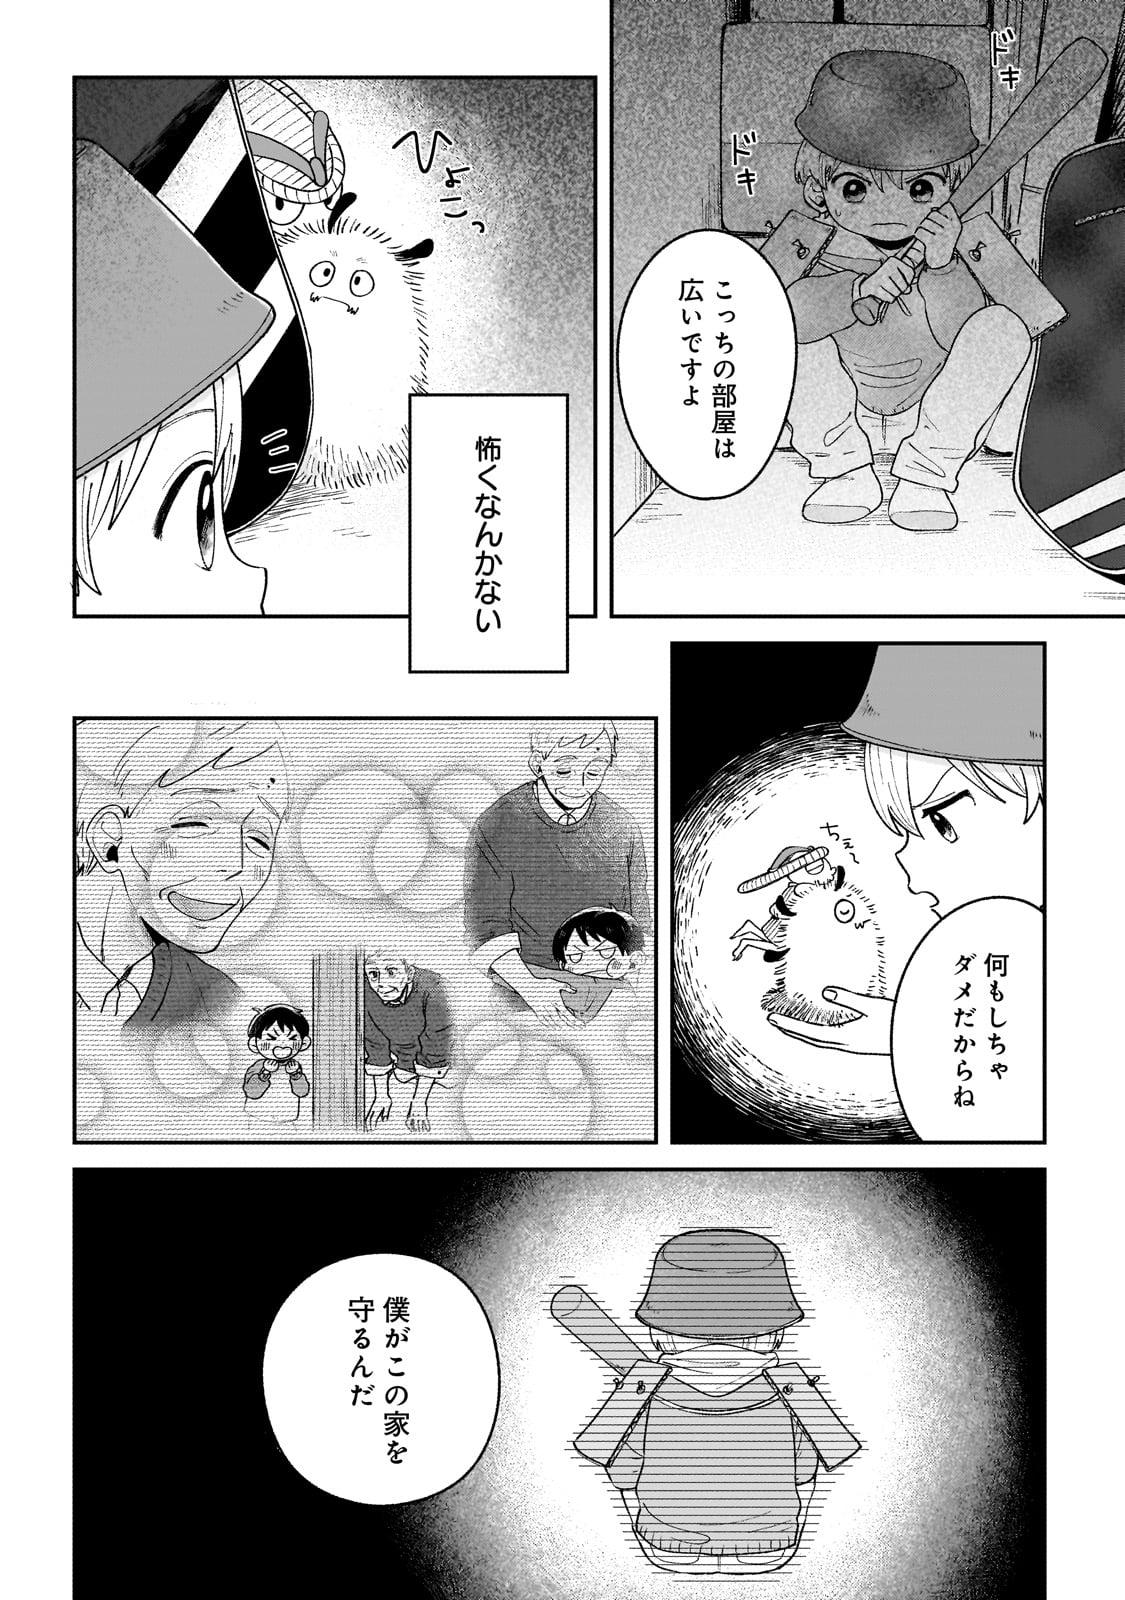 Boku to Ayakashi no 365 Nichi - Chapter 2 - Page 16